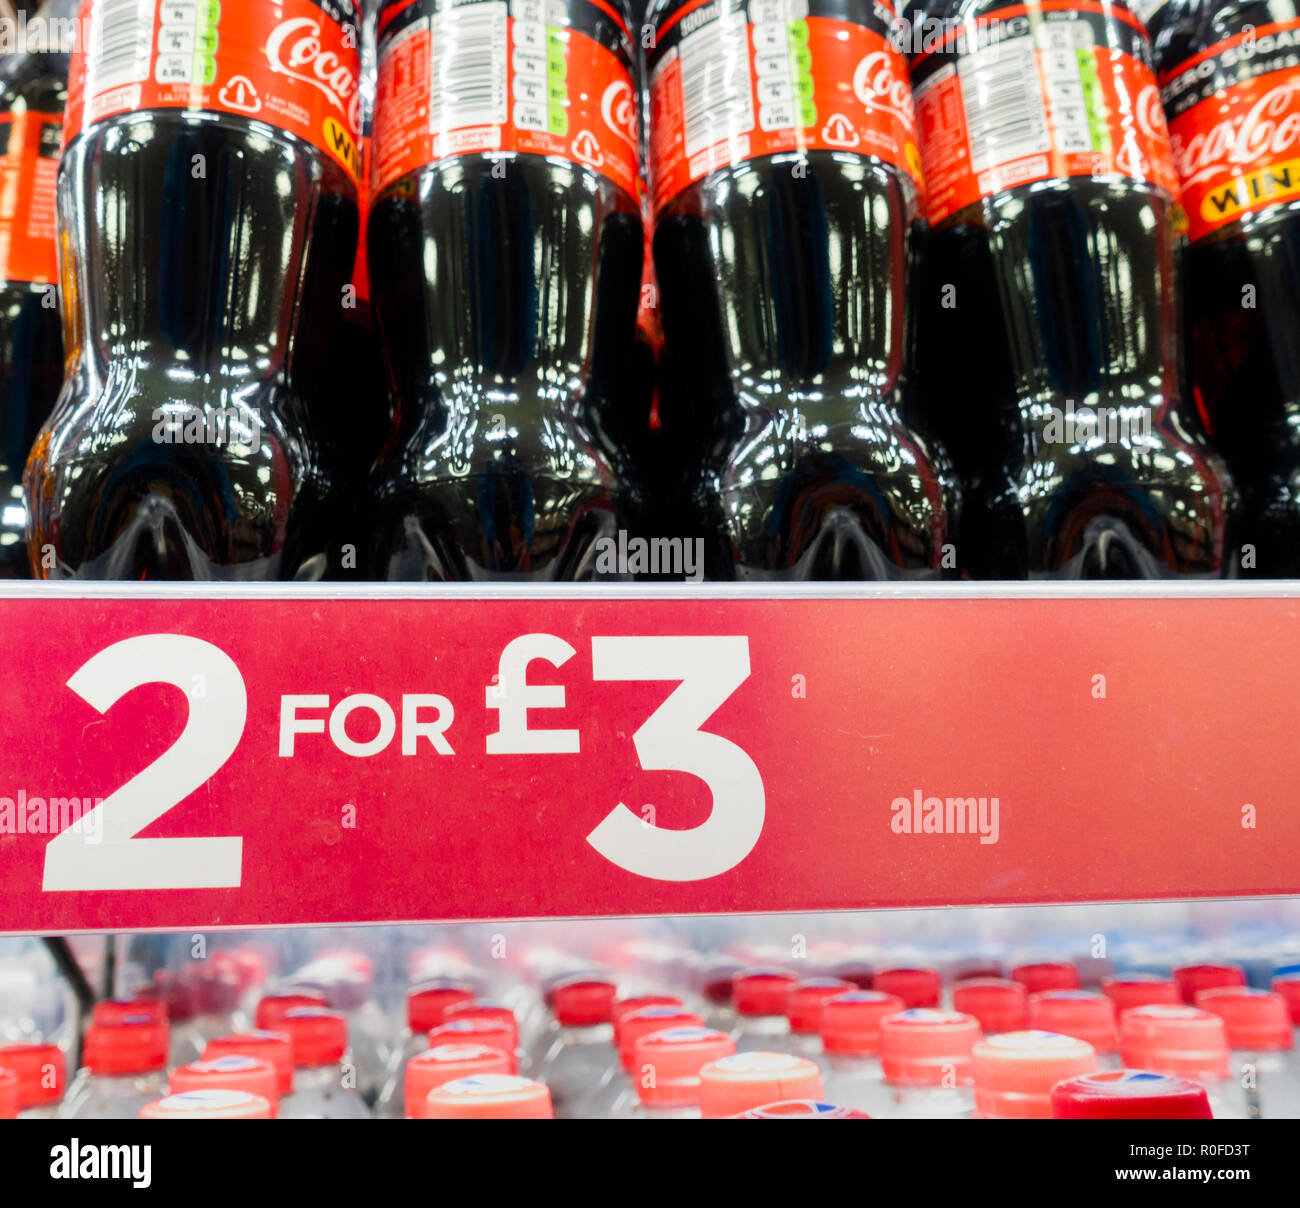 2 de 3 Oferta de refrescos azucarados/tienda en el Reino Unido. Foto de stock